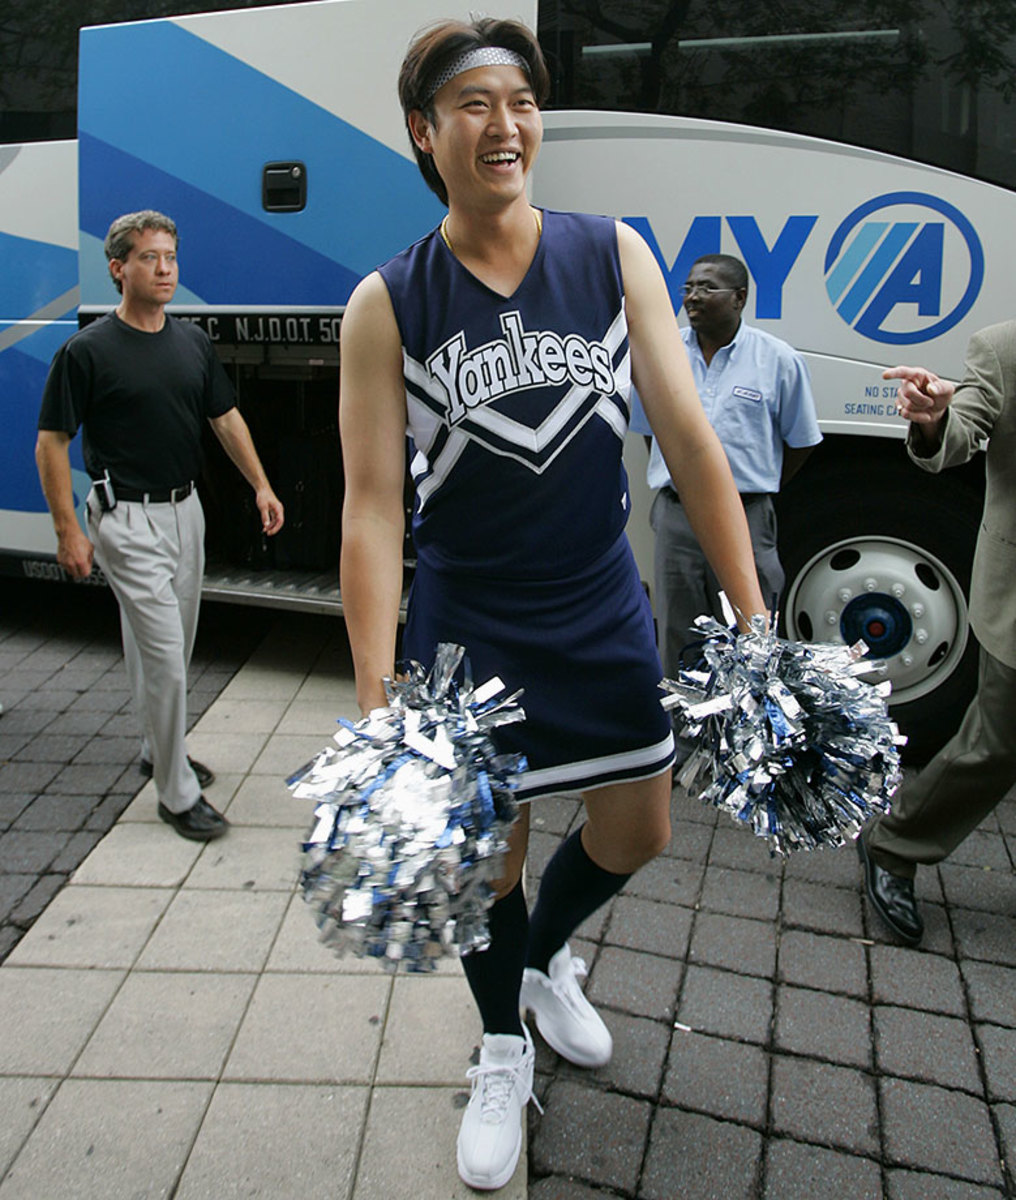 2005-Chien-Ming-Wang-rookie-hazing.jpg